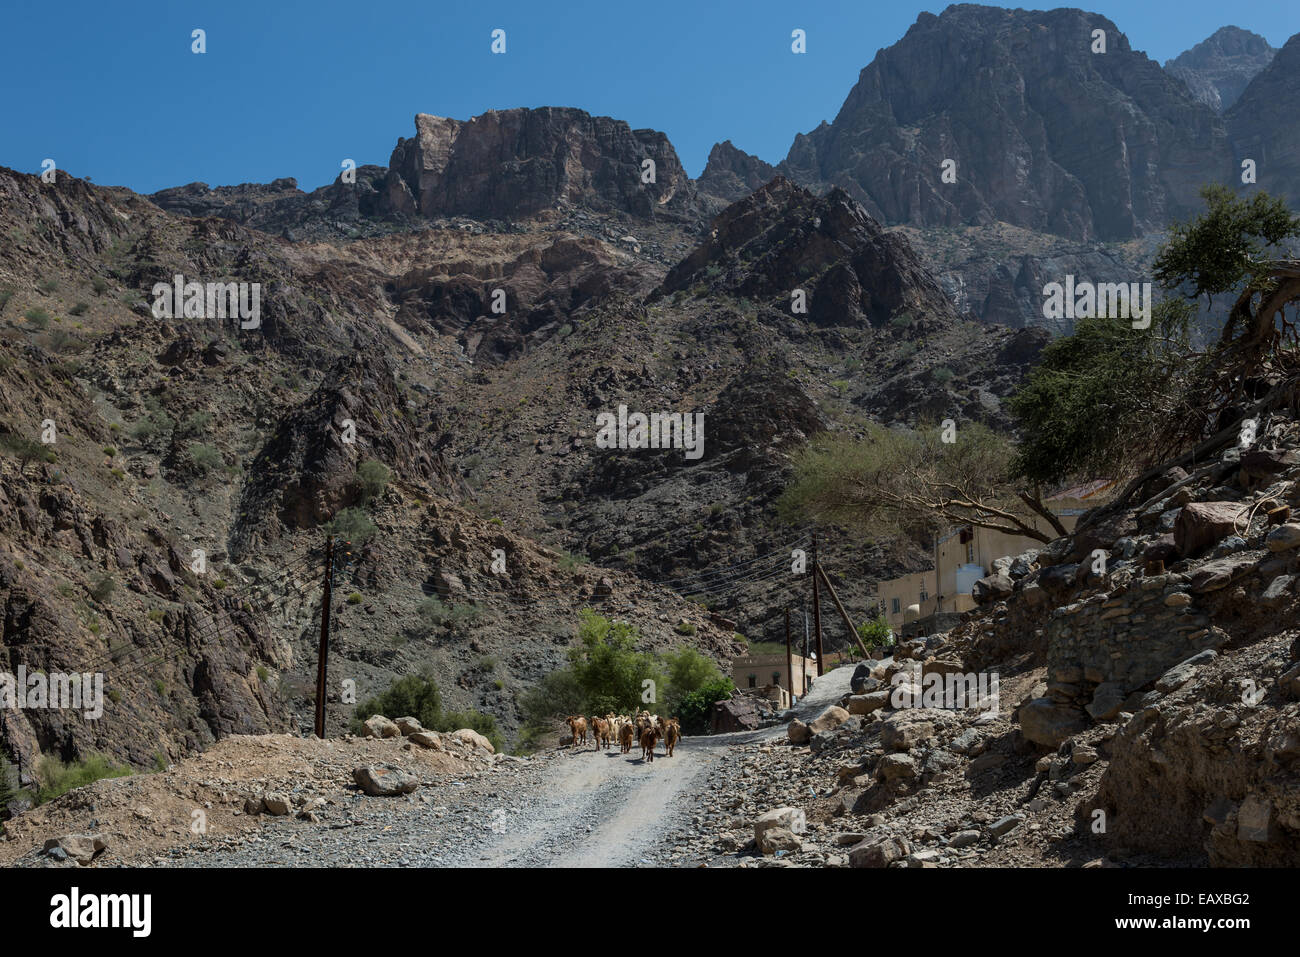 Un rebaño de cabras caminando sobre un camino de tierra en una pequeña aldea de montaña. Omán. Foto de stock